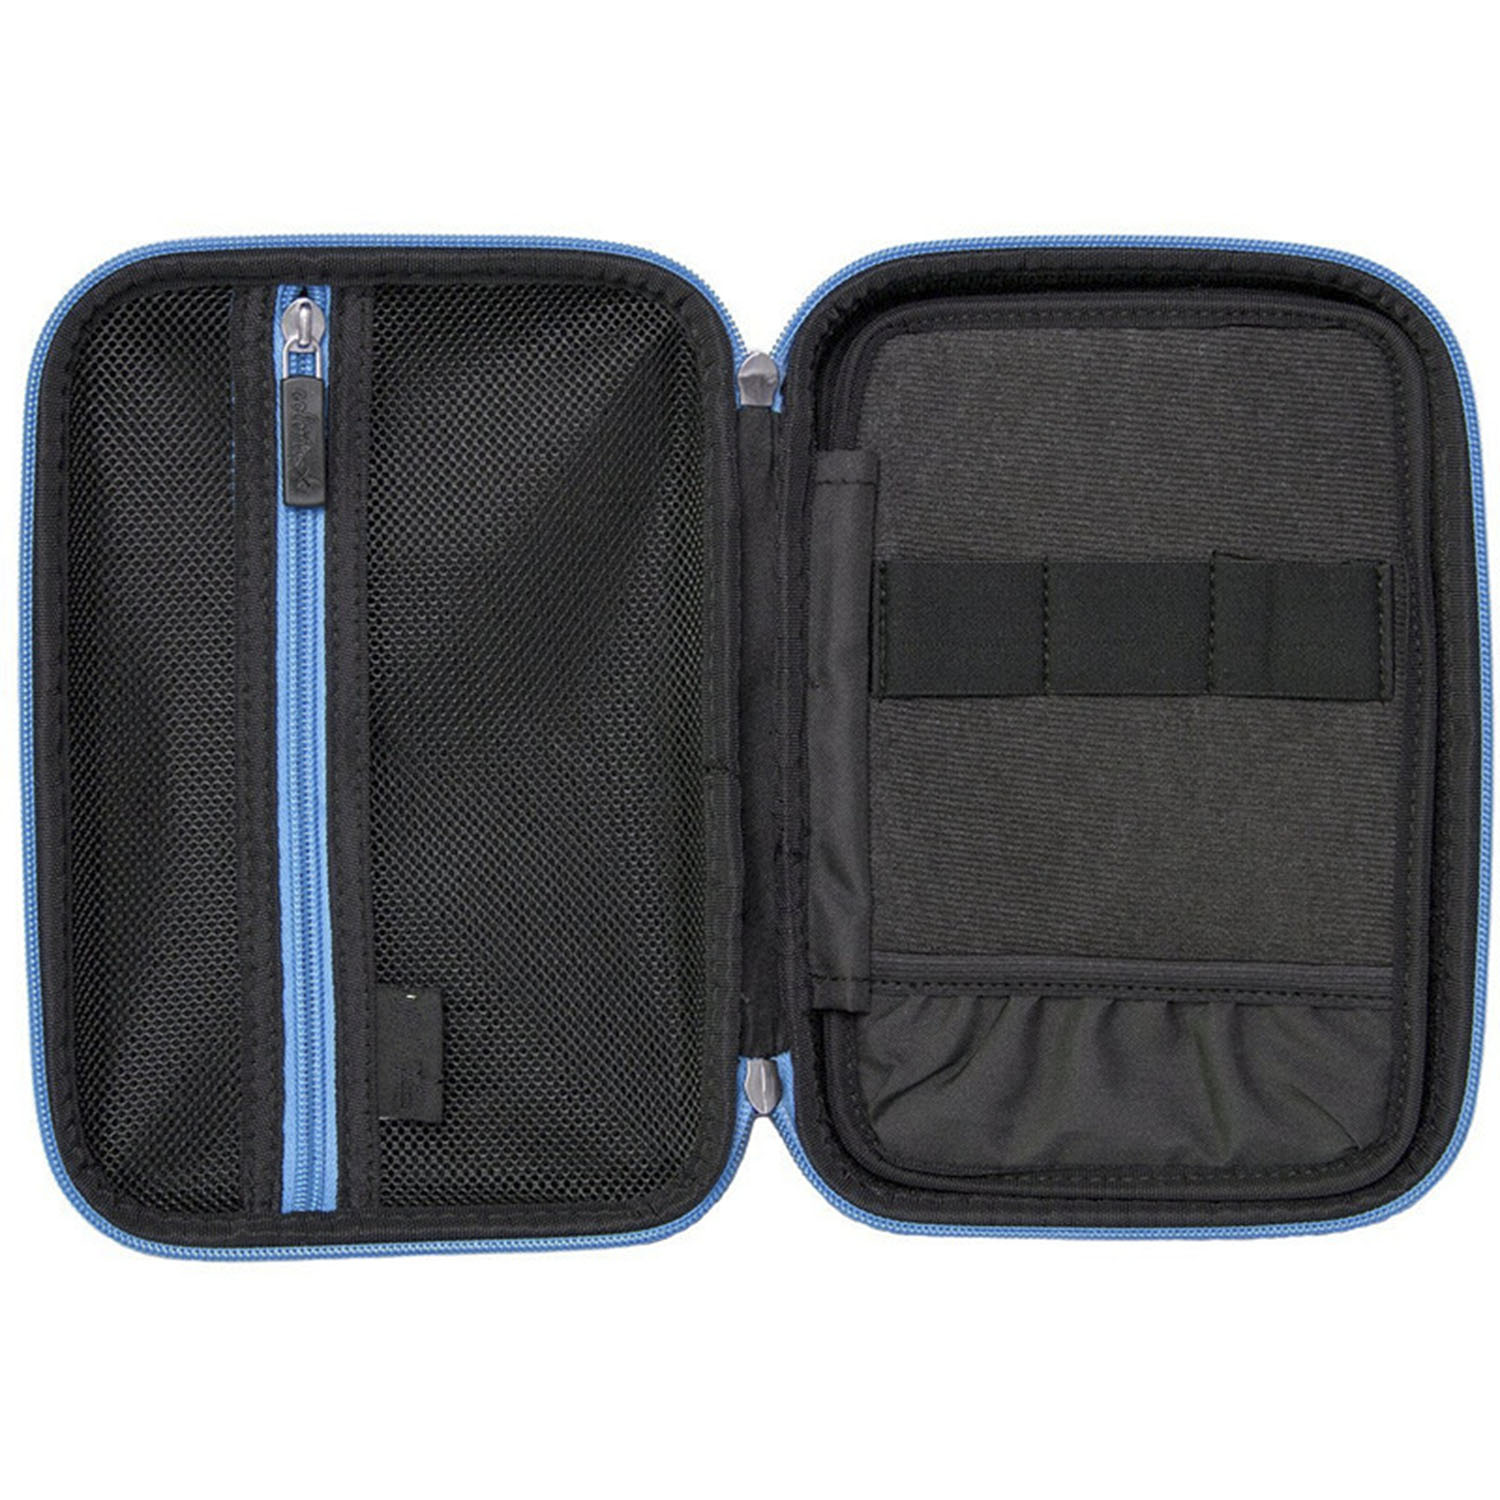 黑/藍方形大容量筆盒 6.5*9 inch